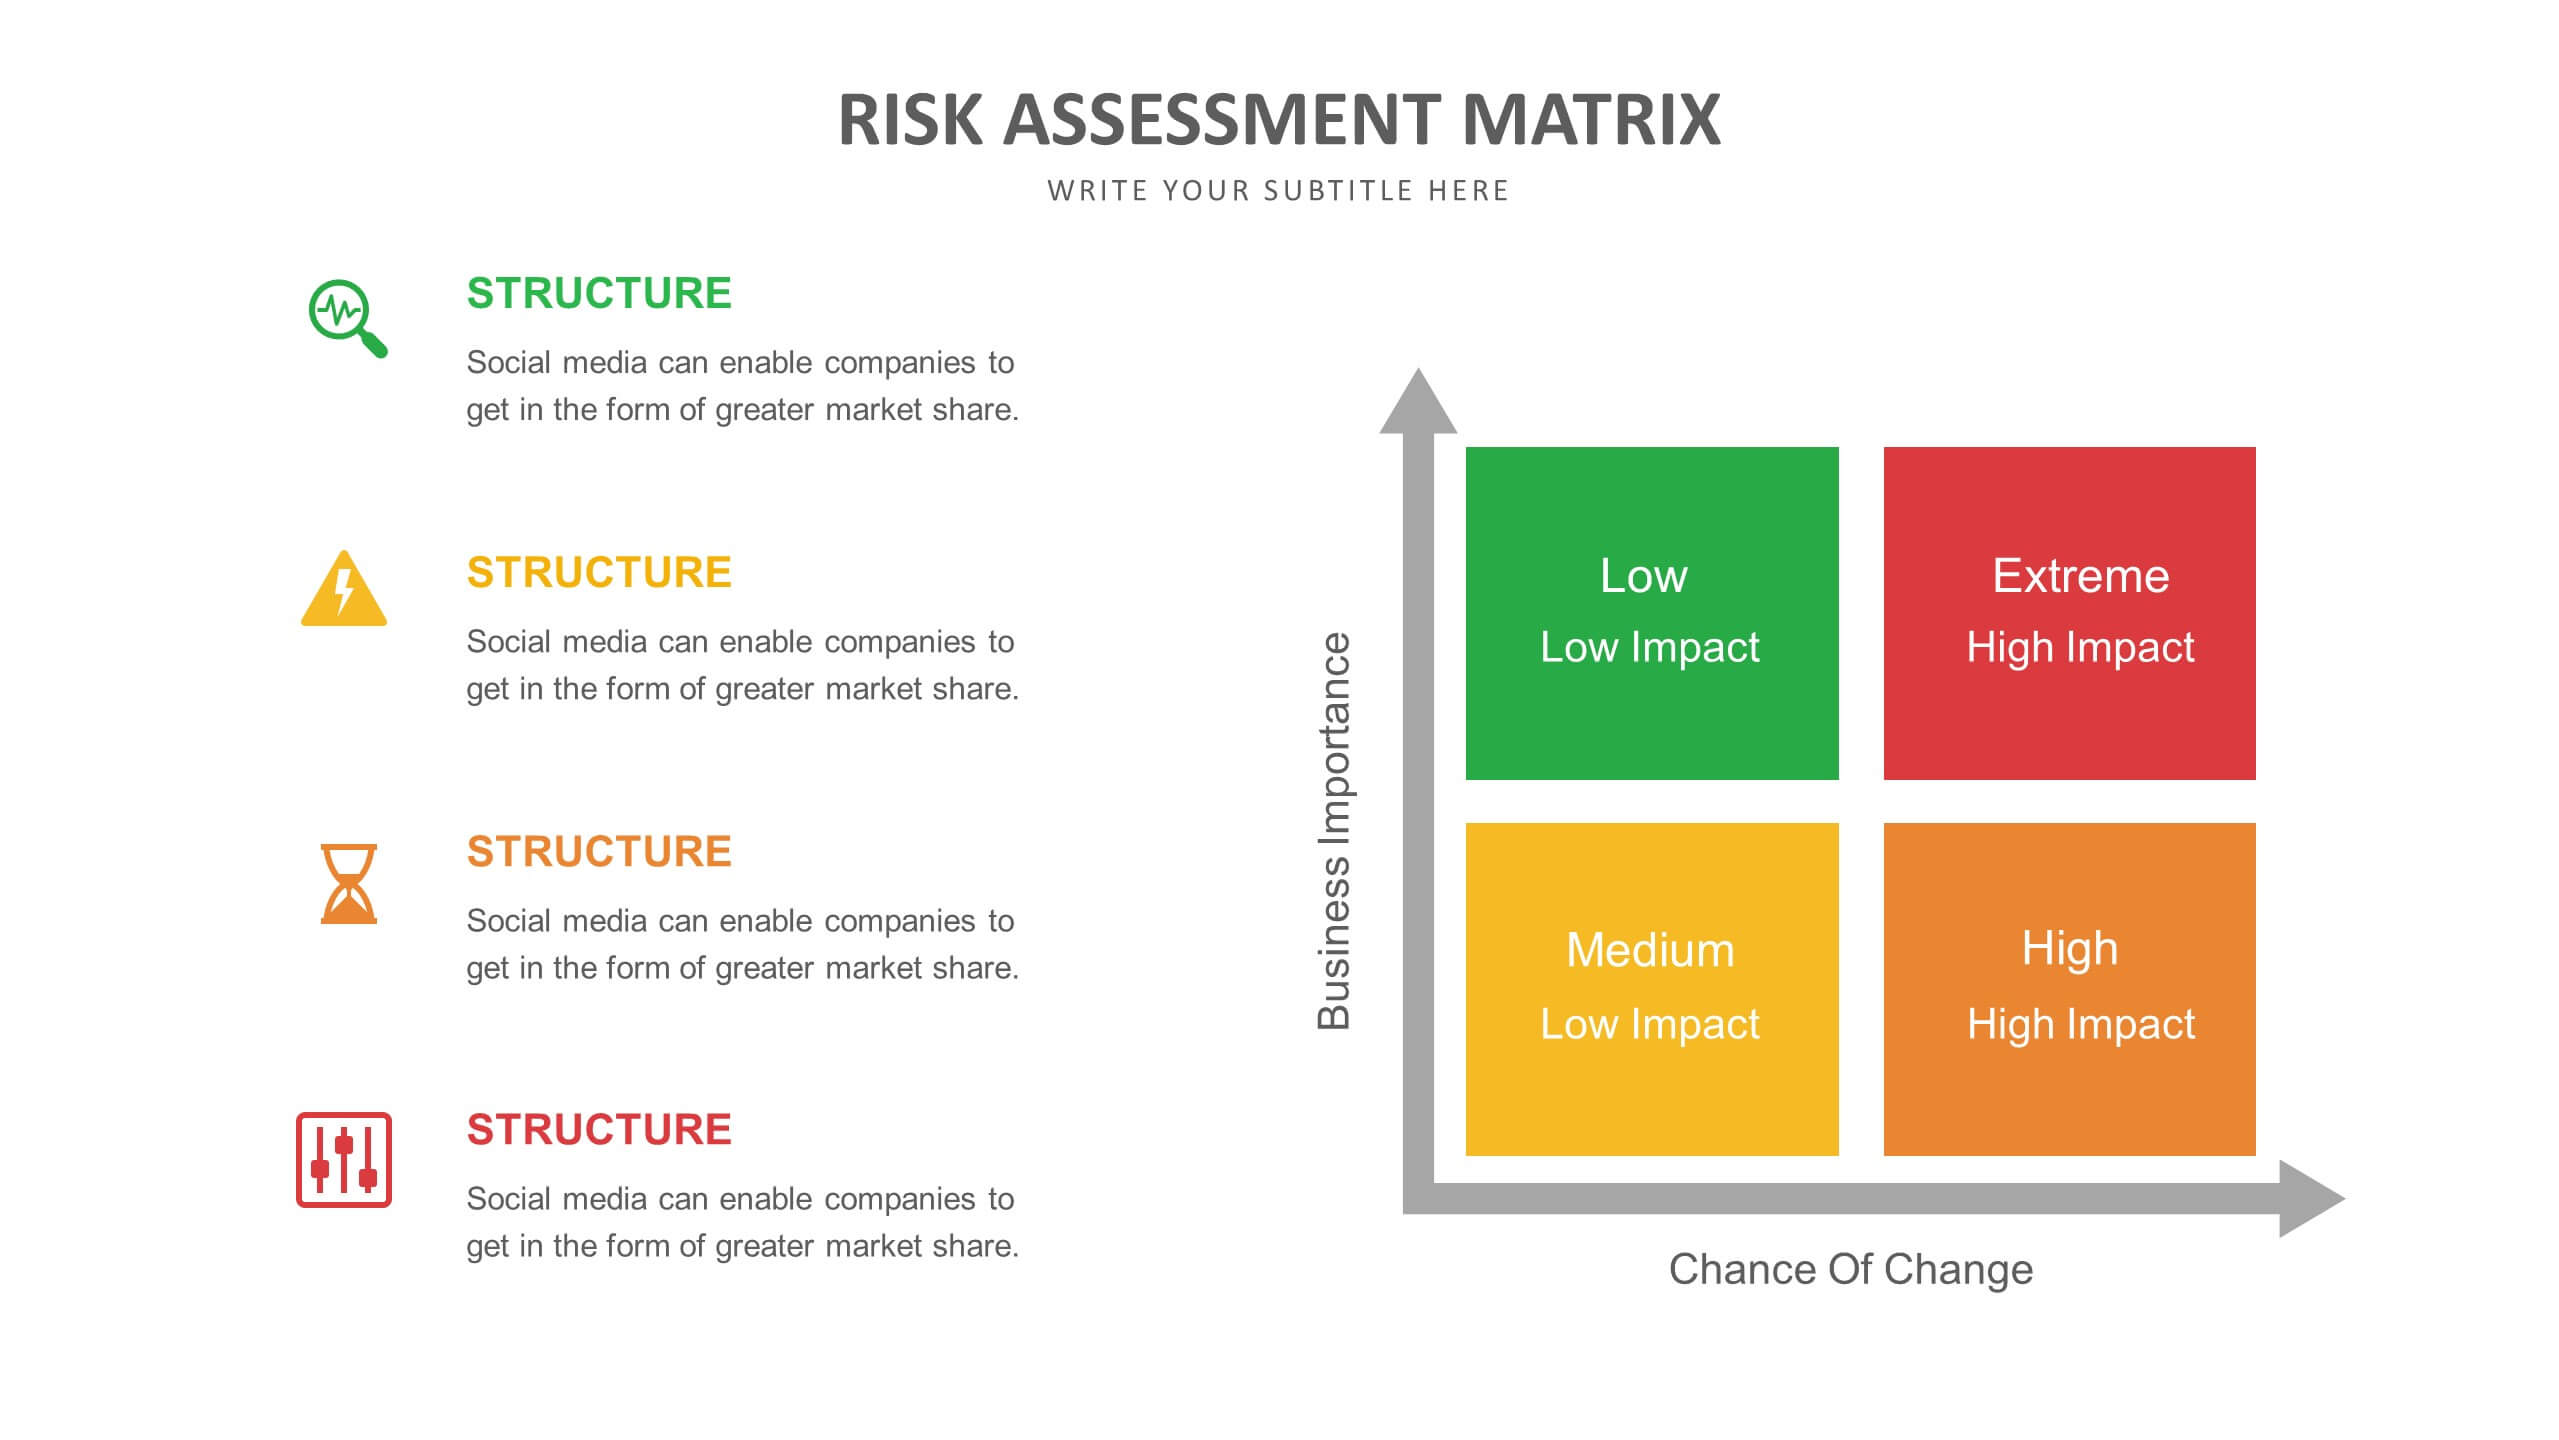 Risk Management Presentation Template